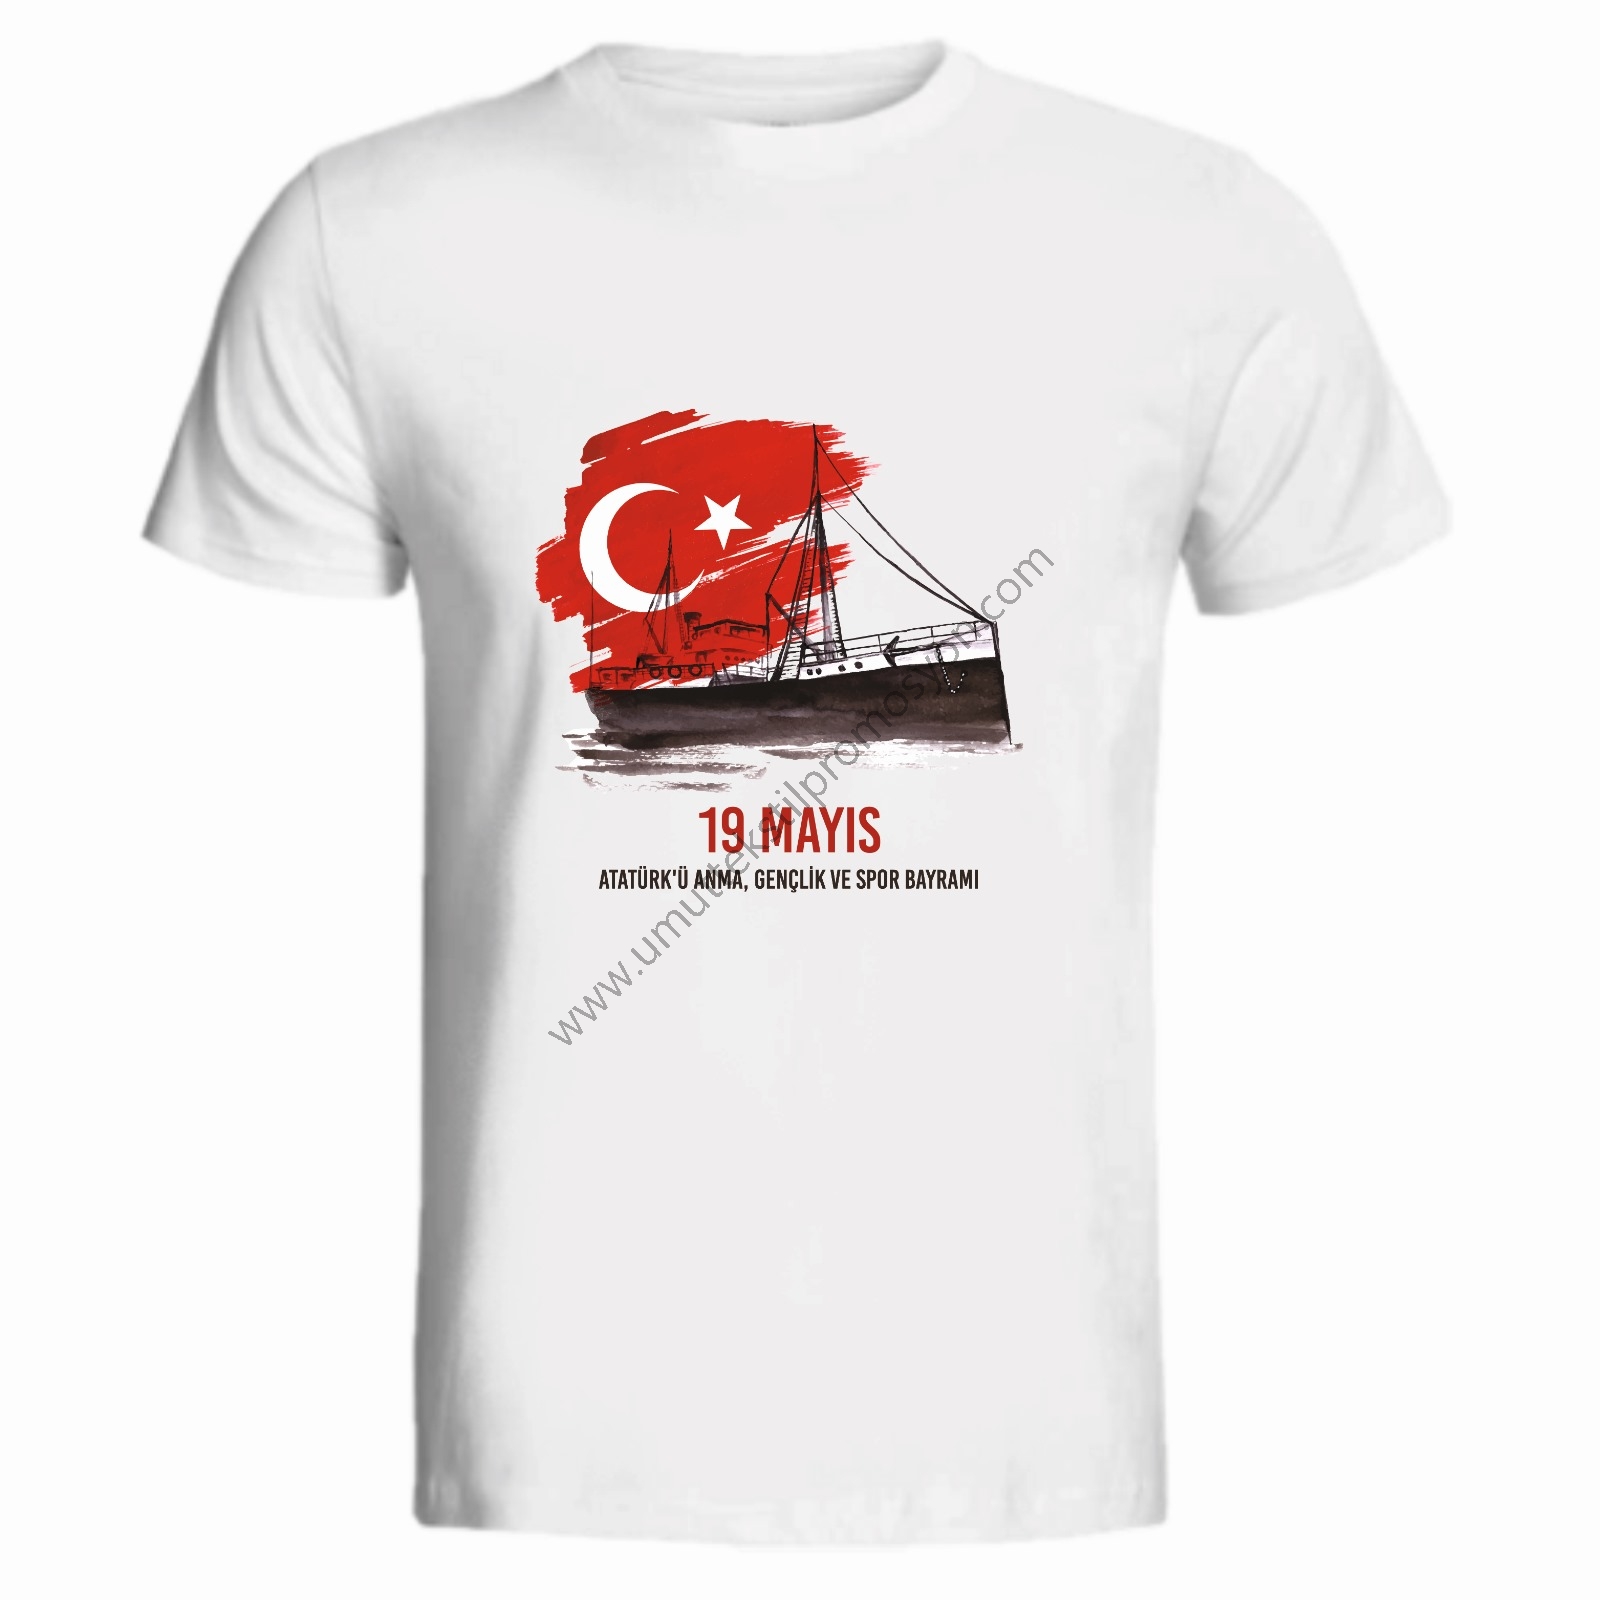 19 Mayıs Baskılı Tişört Afyankarahisar